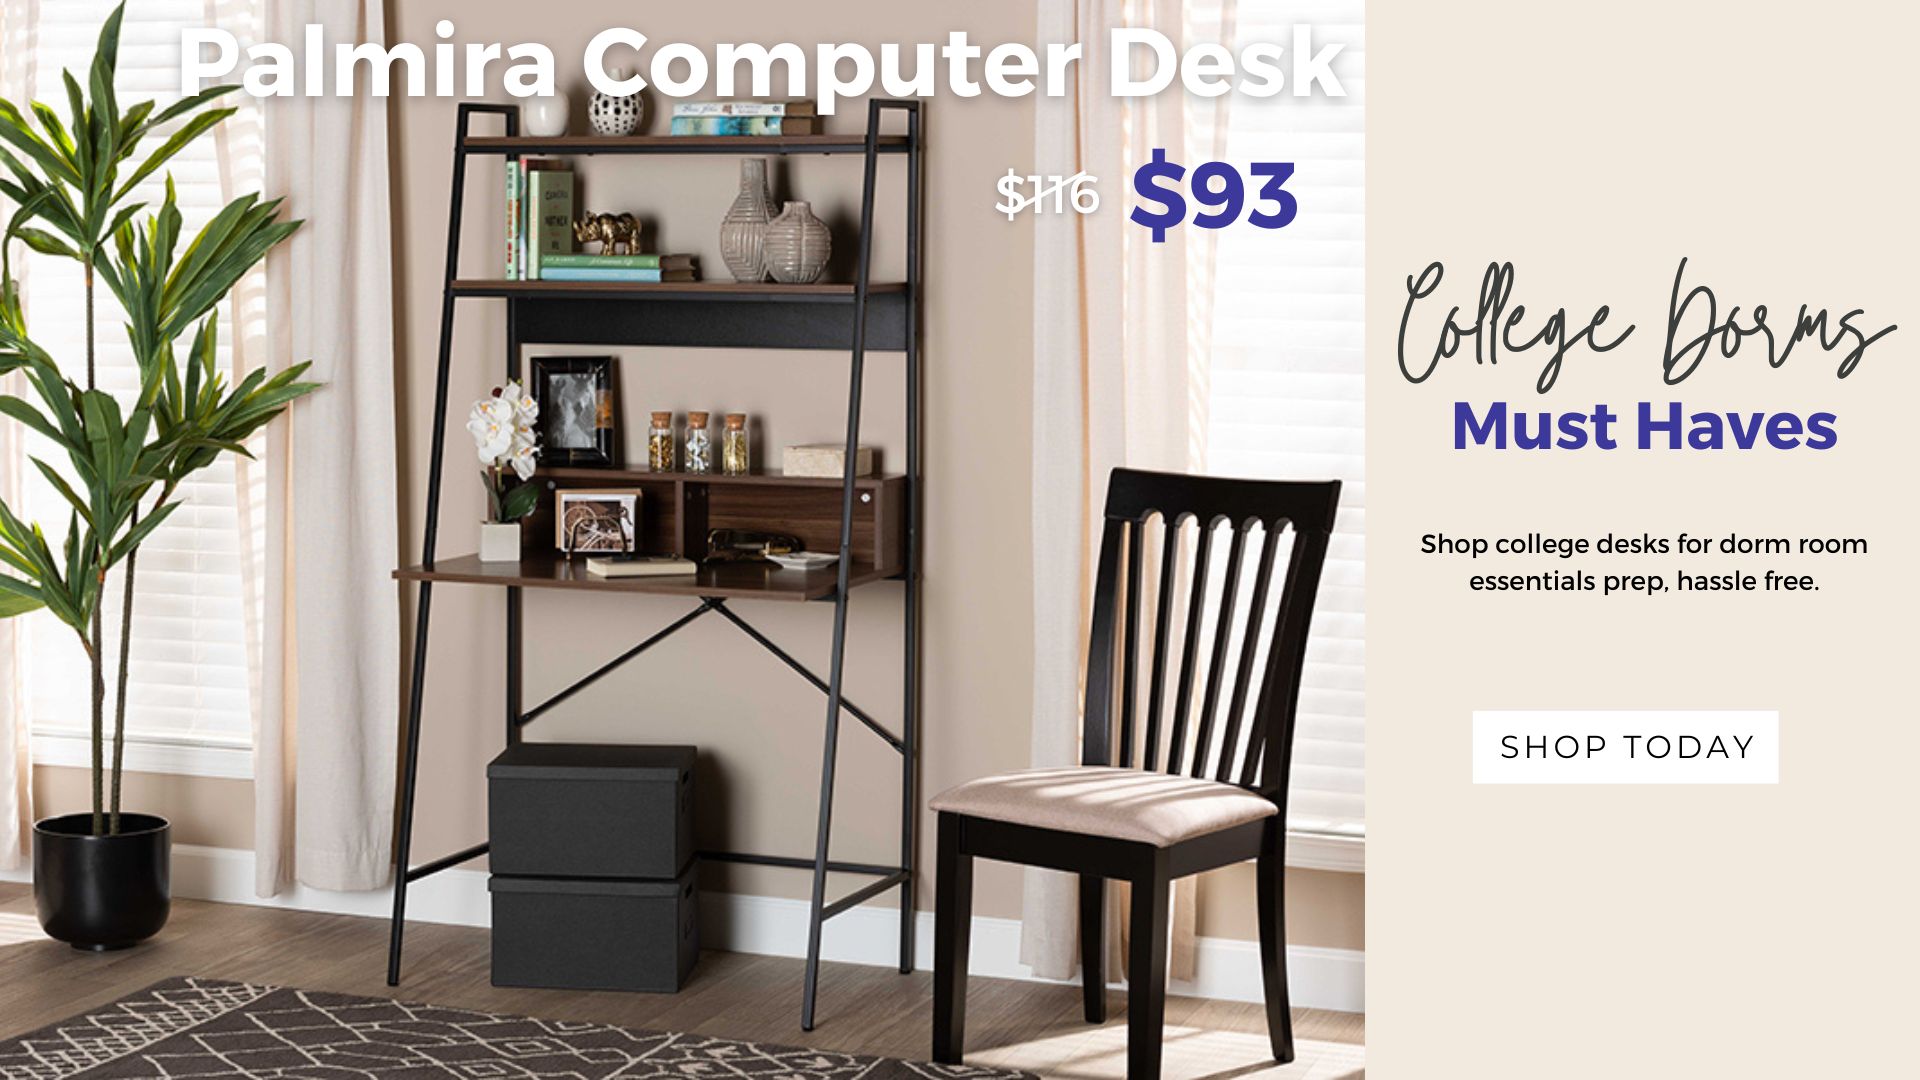 Palmira Computer Desk $93